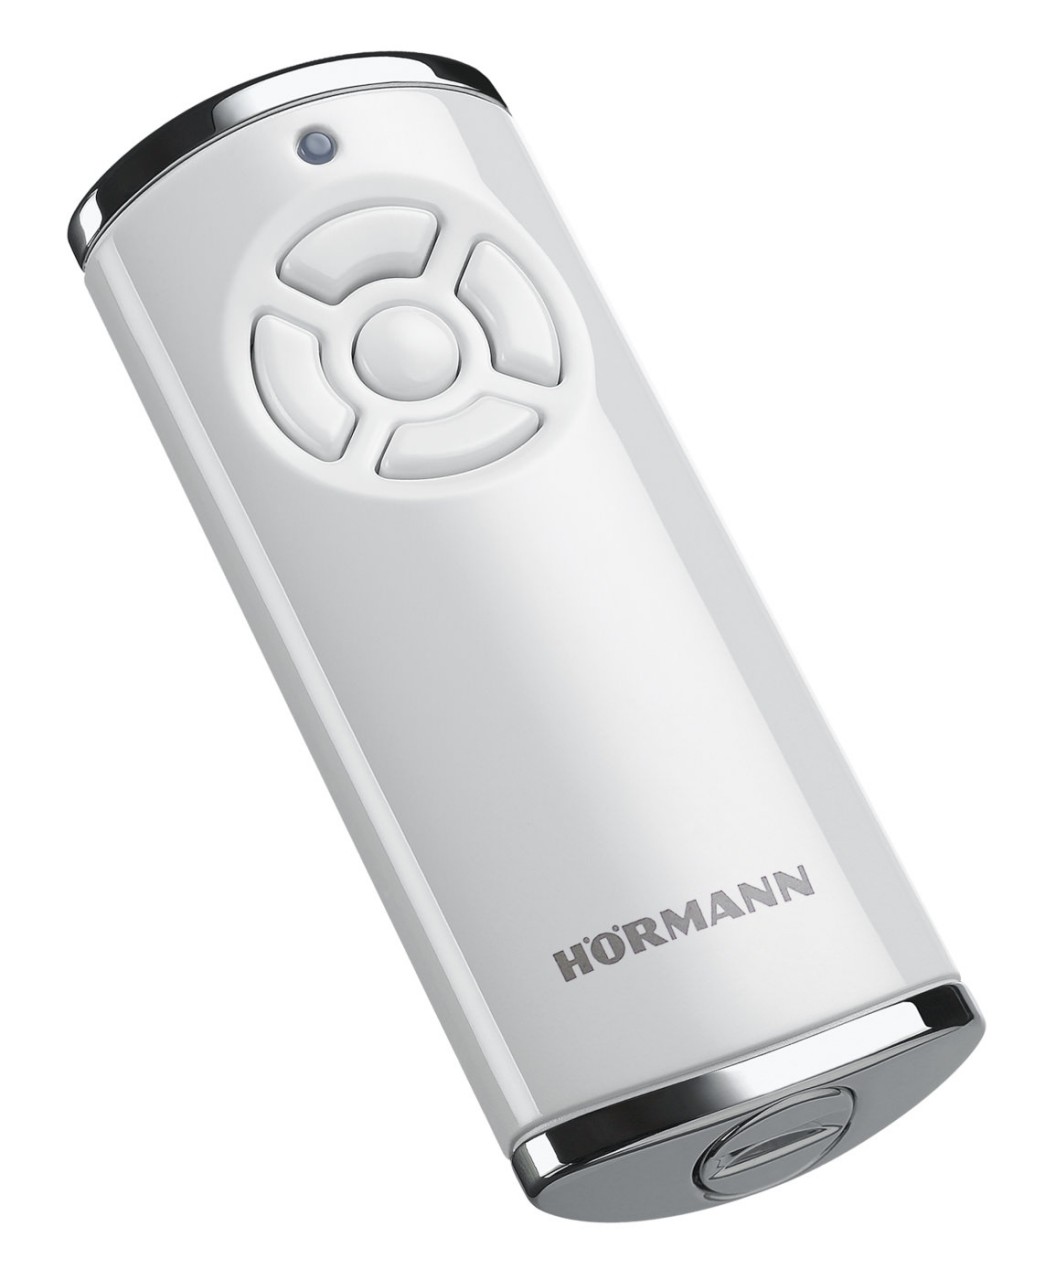 Hörmann Handsender HS 5 868 MHz BiSecur weiß